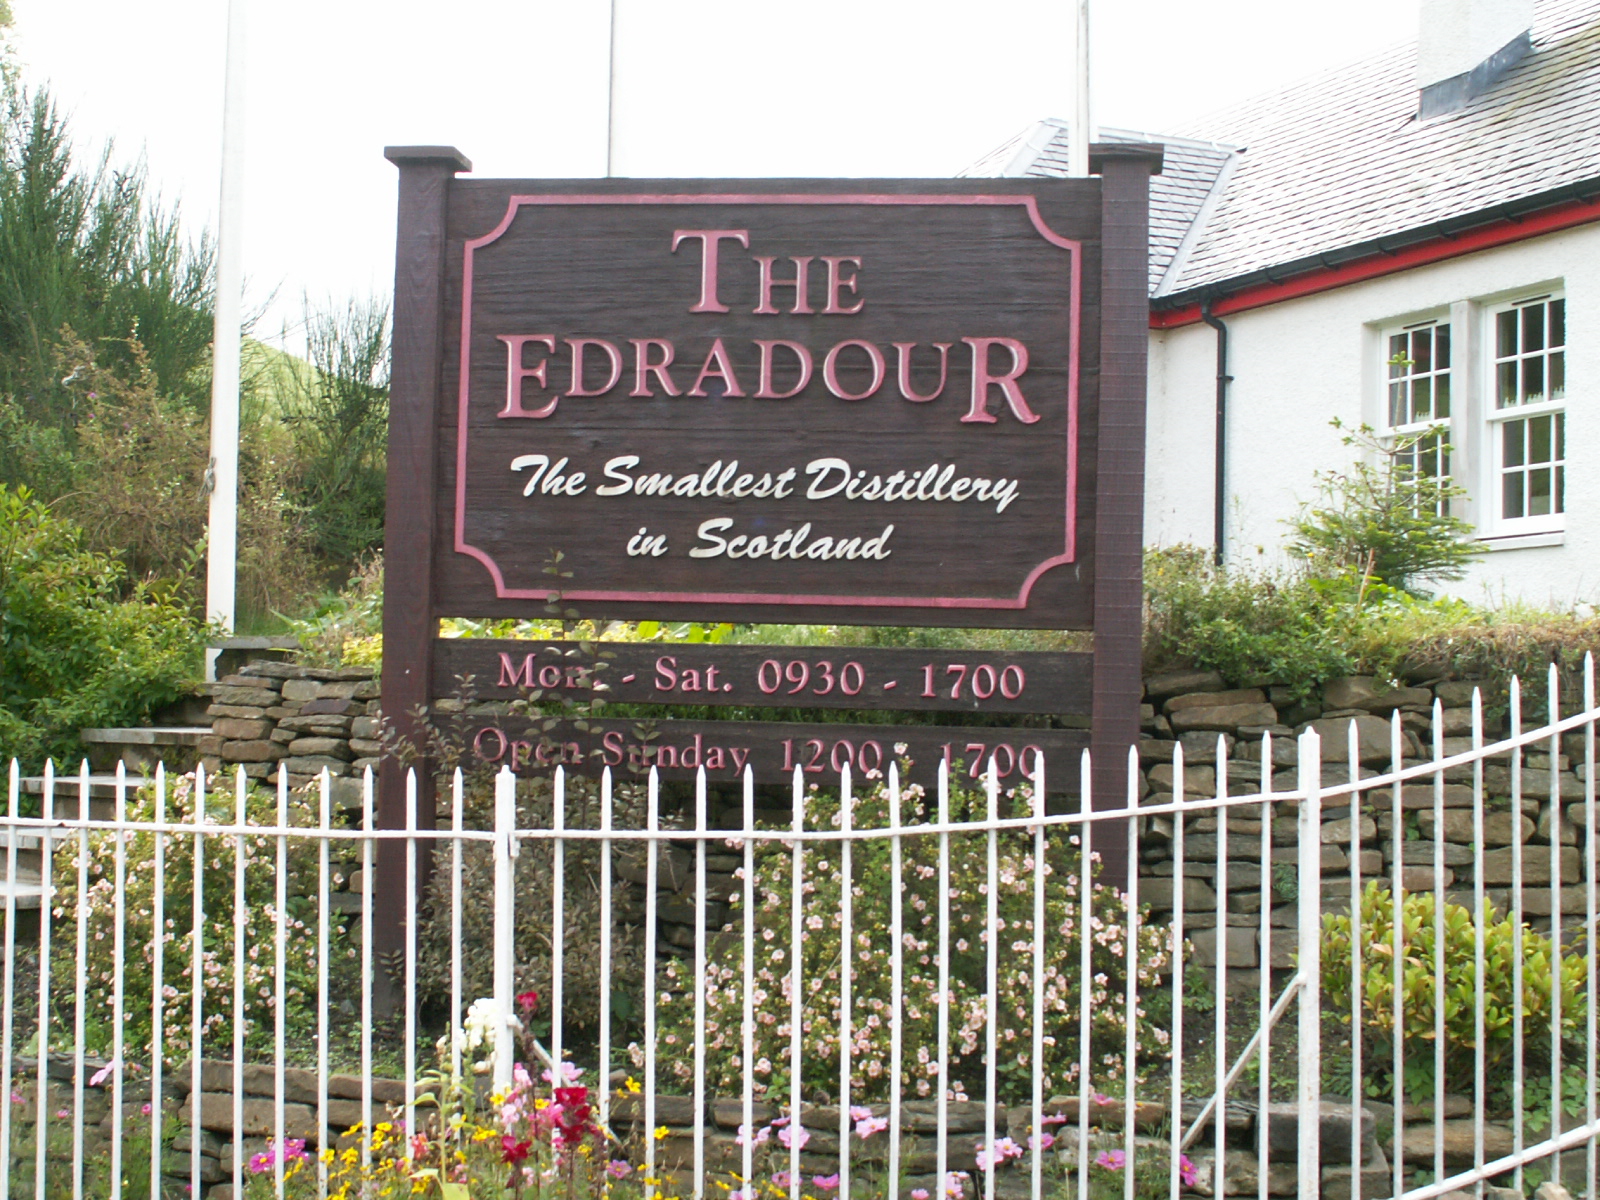 The Edradour